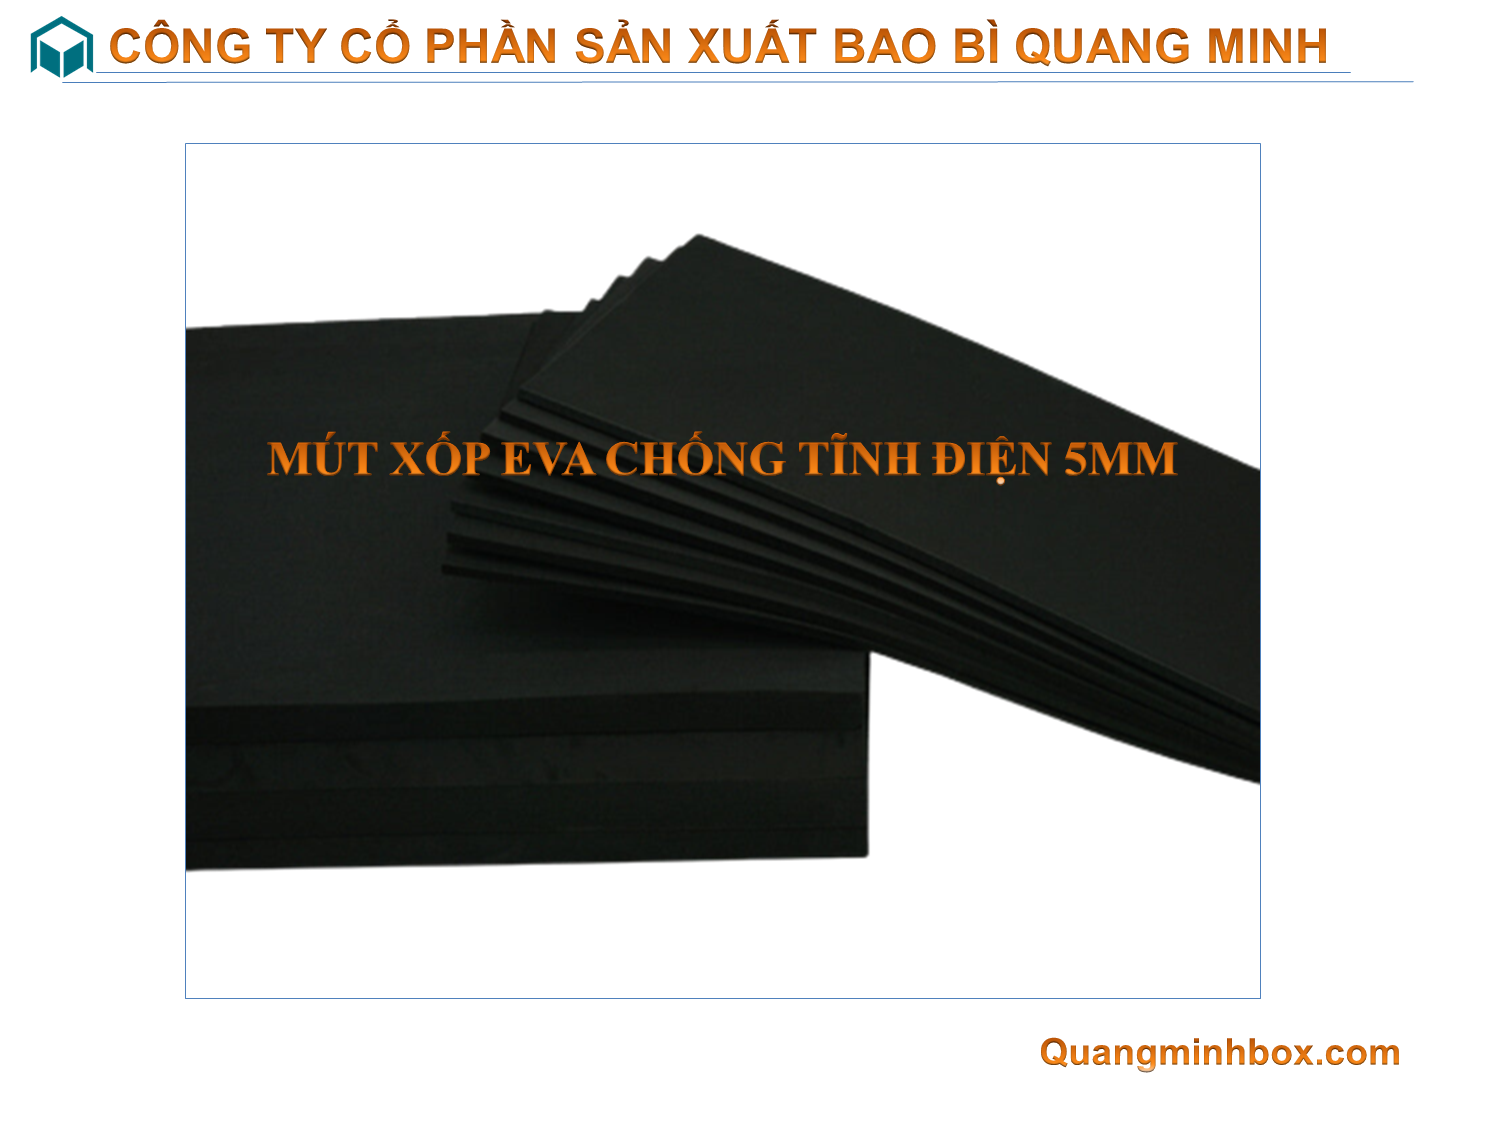 mut-xop-eva-chong-tinh-dien-5mm